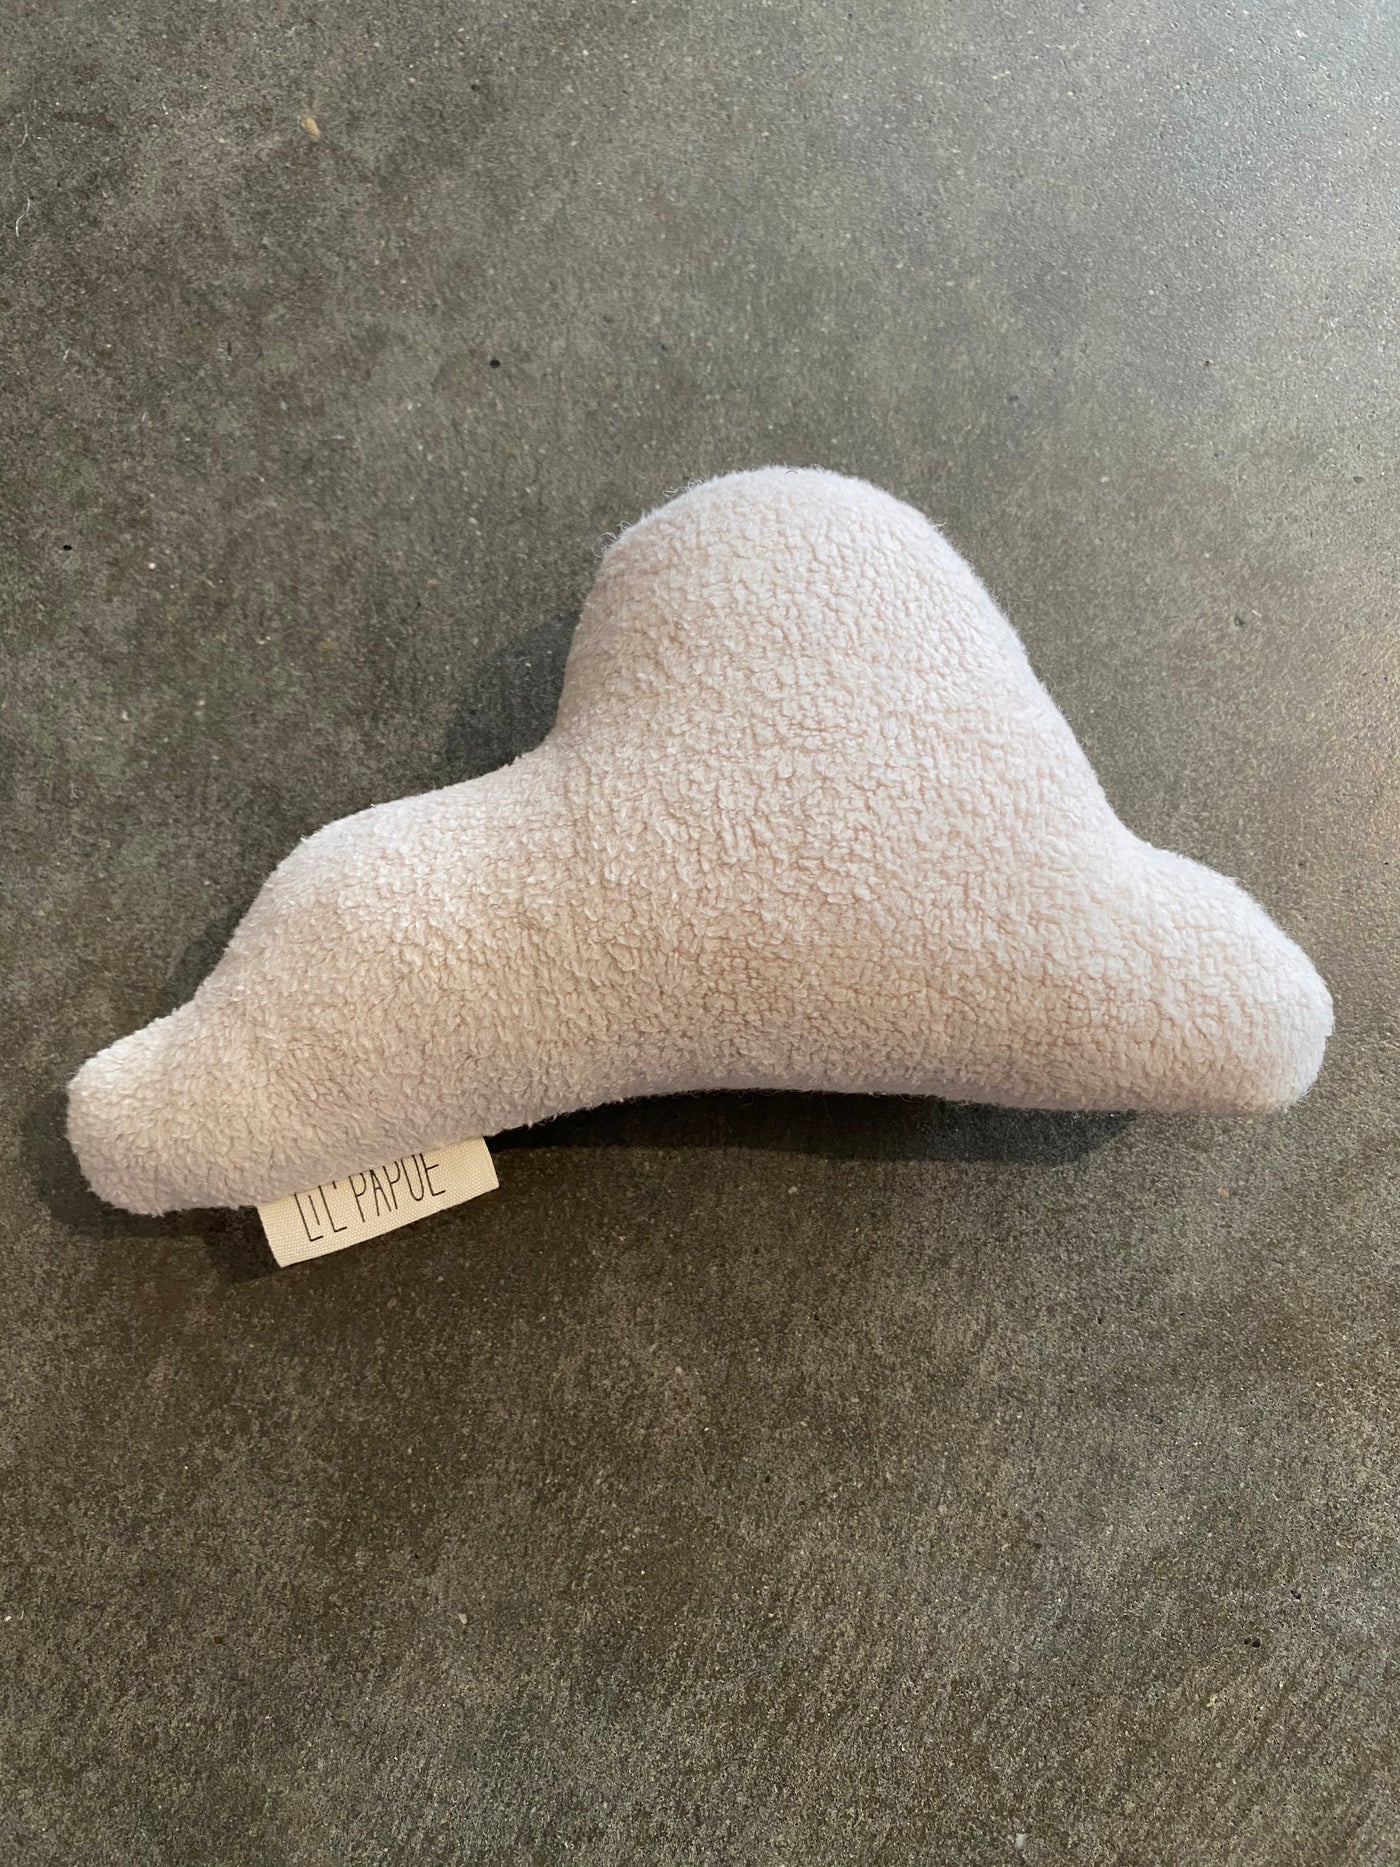 Lil' Papoe - Squeaky cloud teddy beige